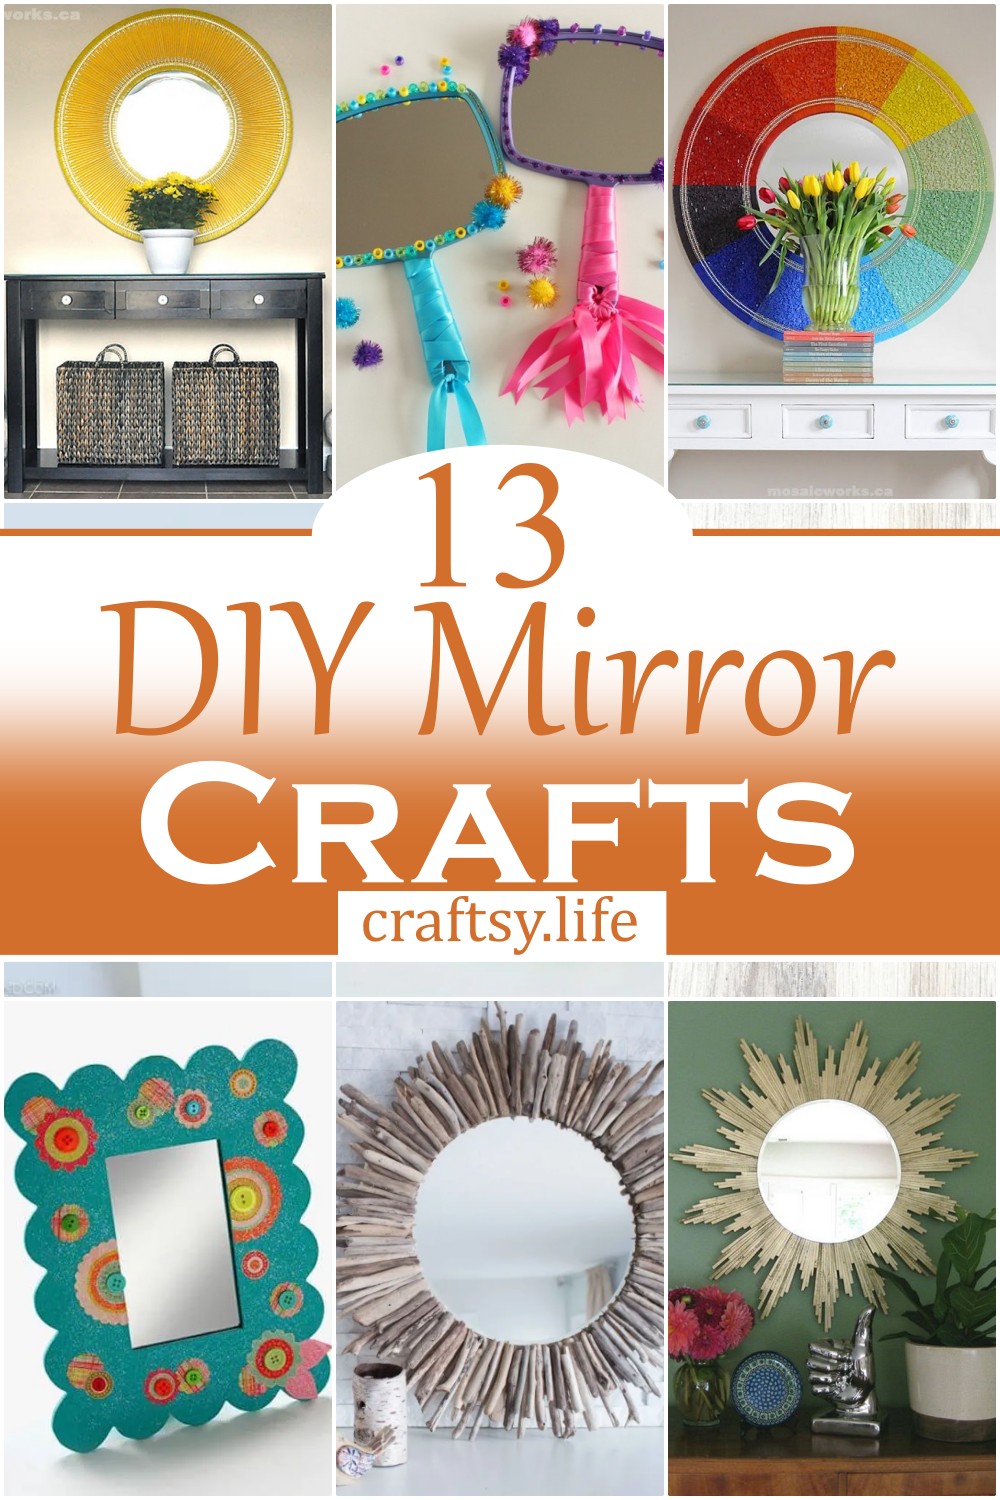 DIY Mirror Crafts